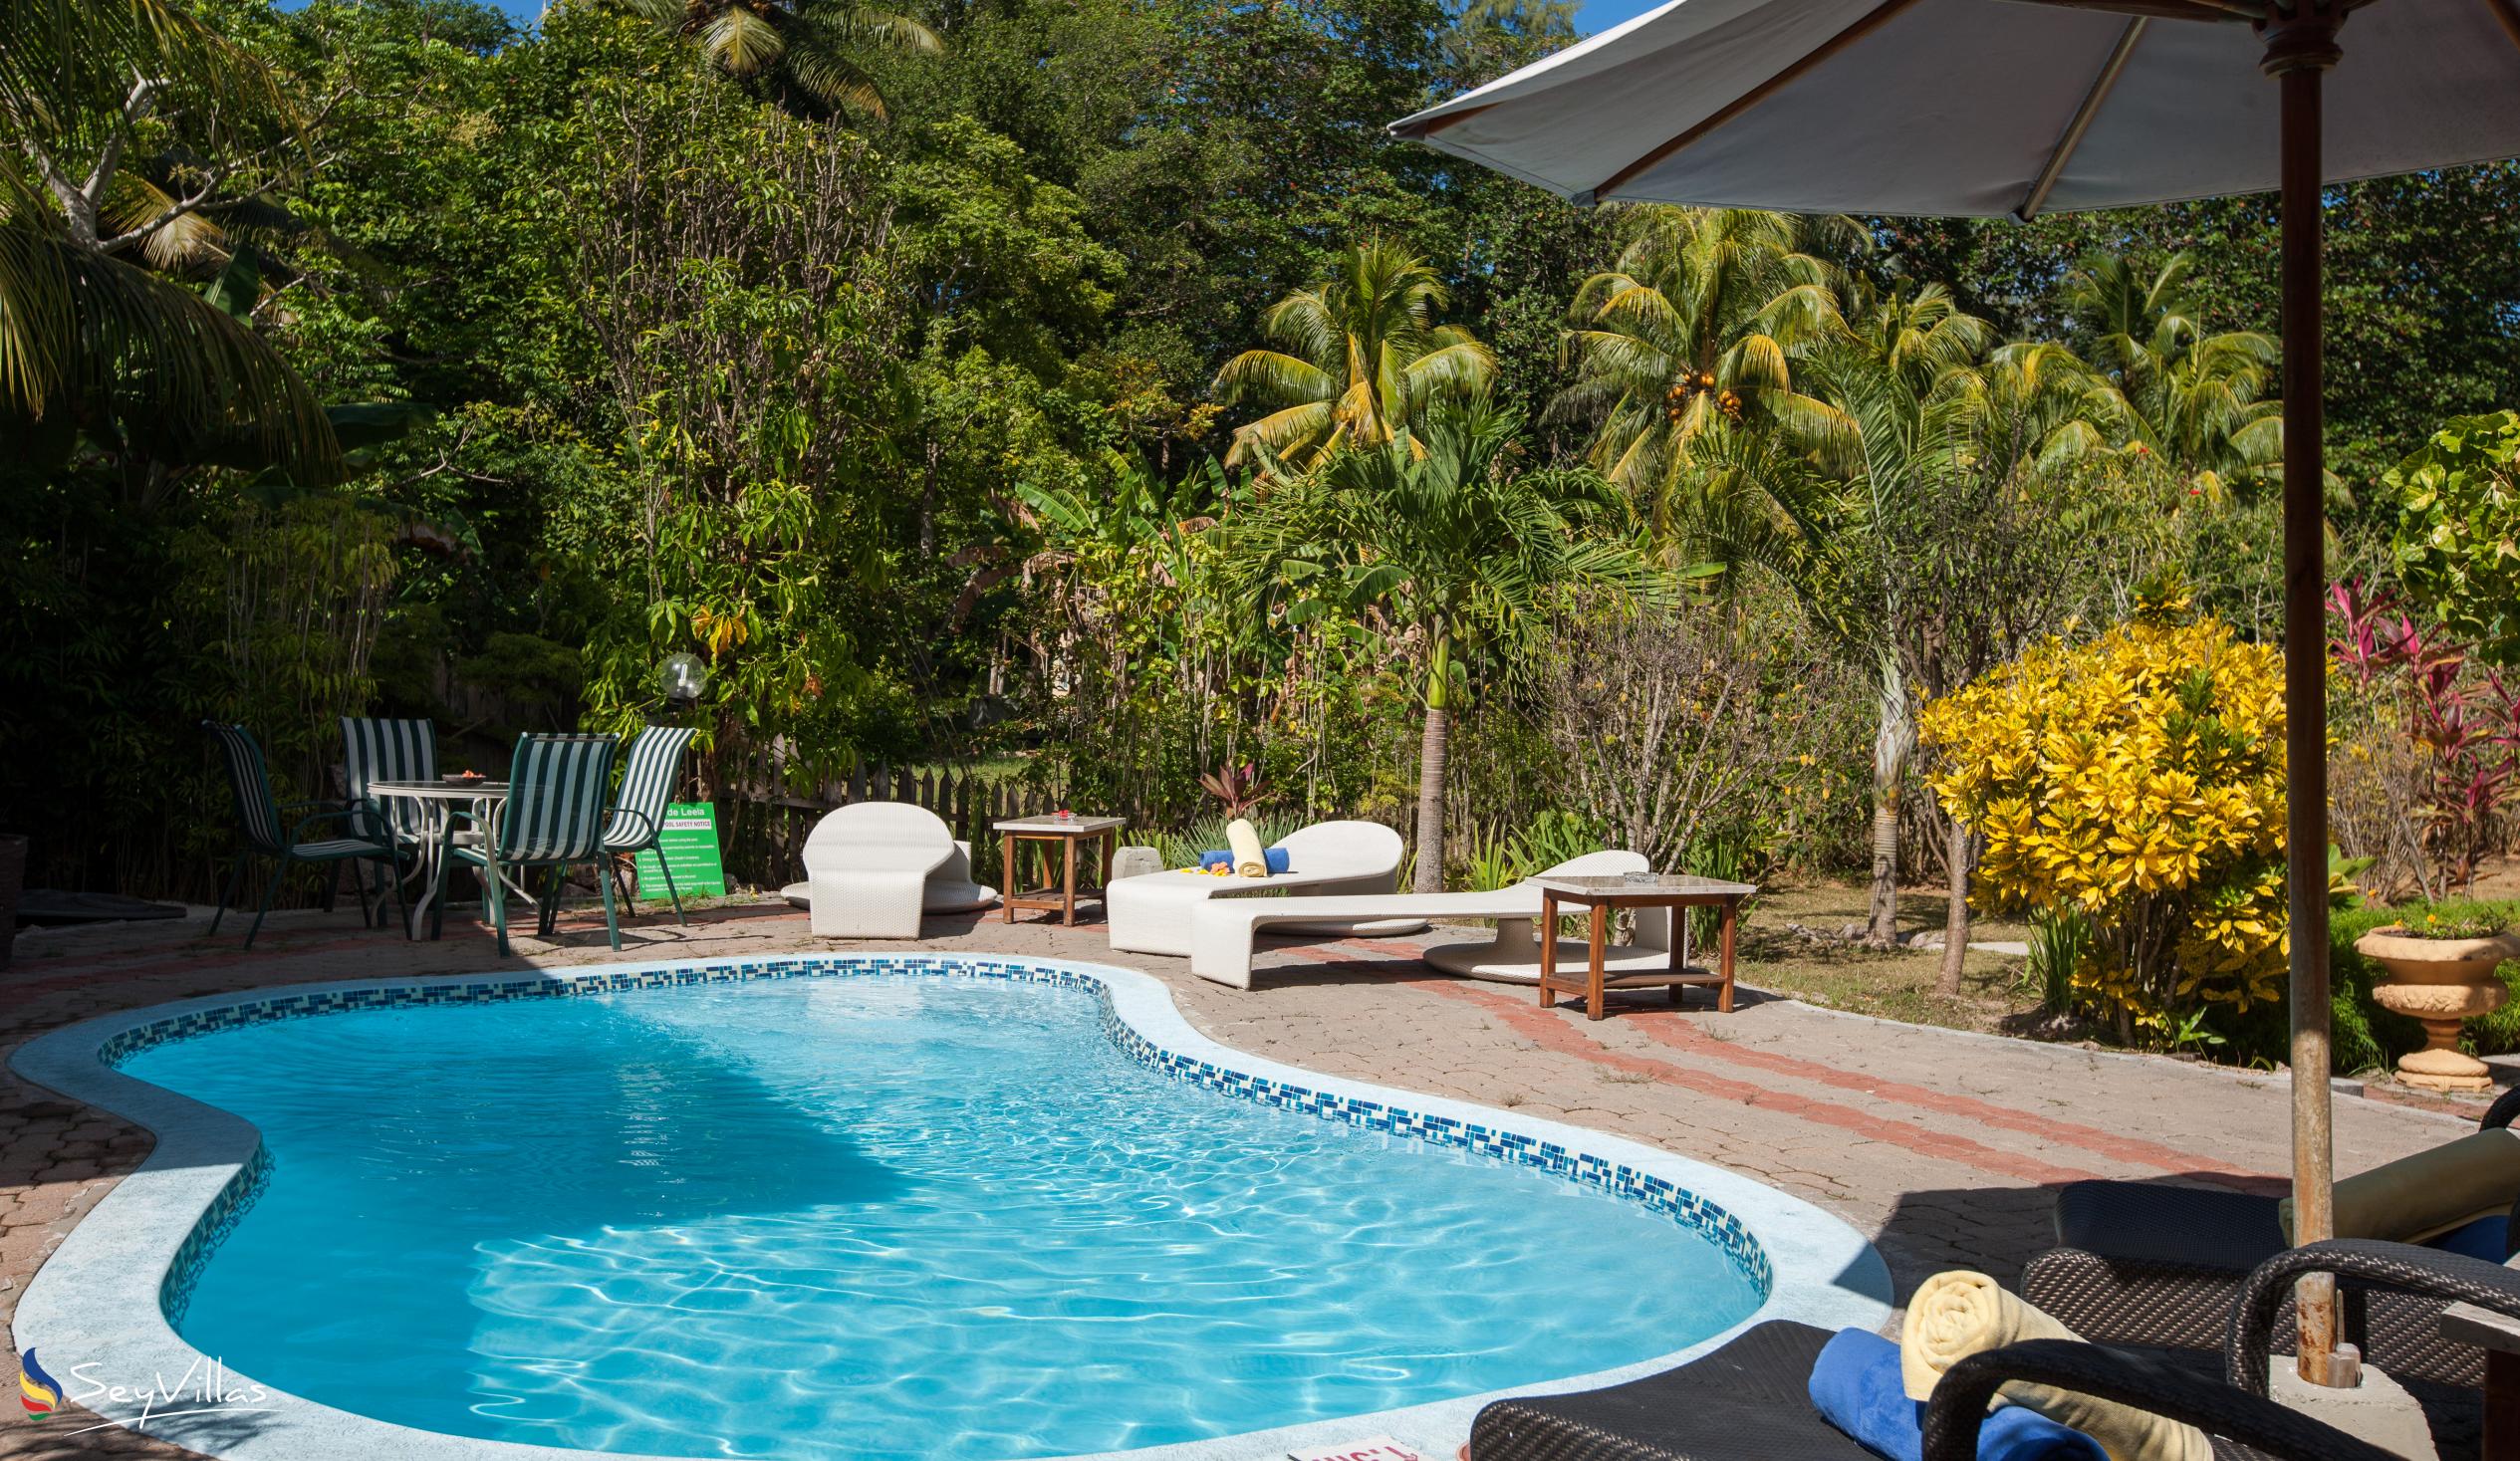 Photo 10: Casa de Leela - Outdoor area - La Digue (Seychelles)